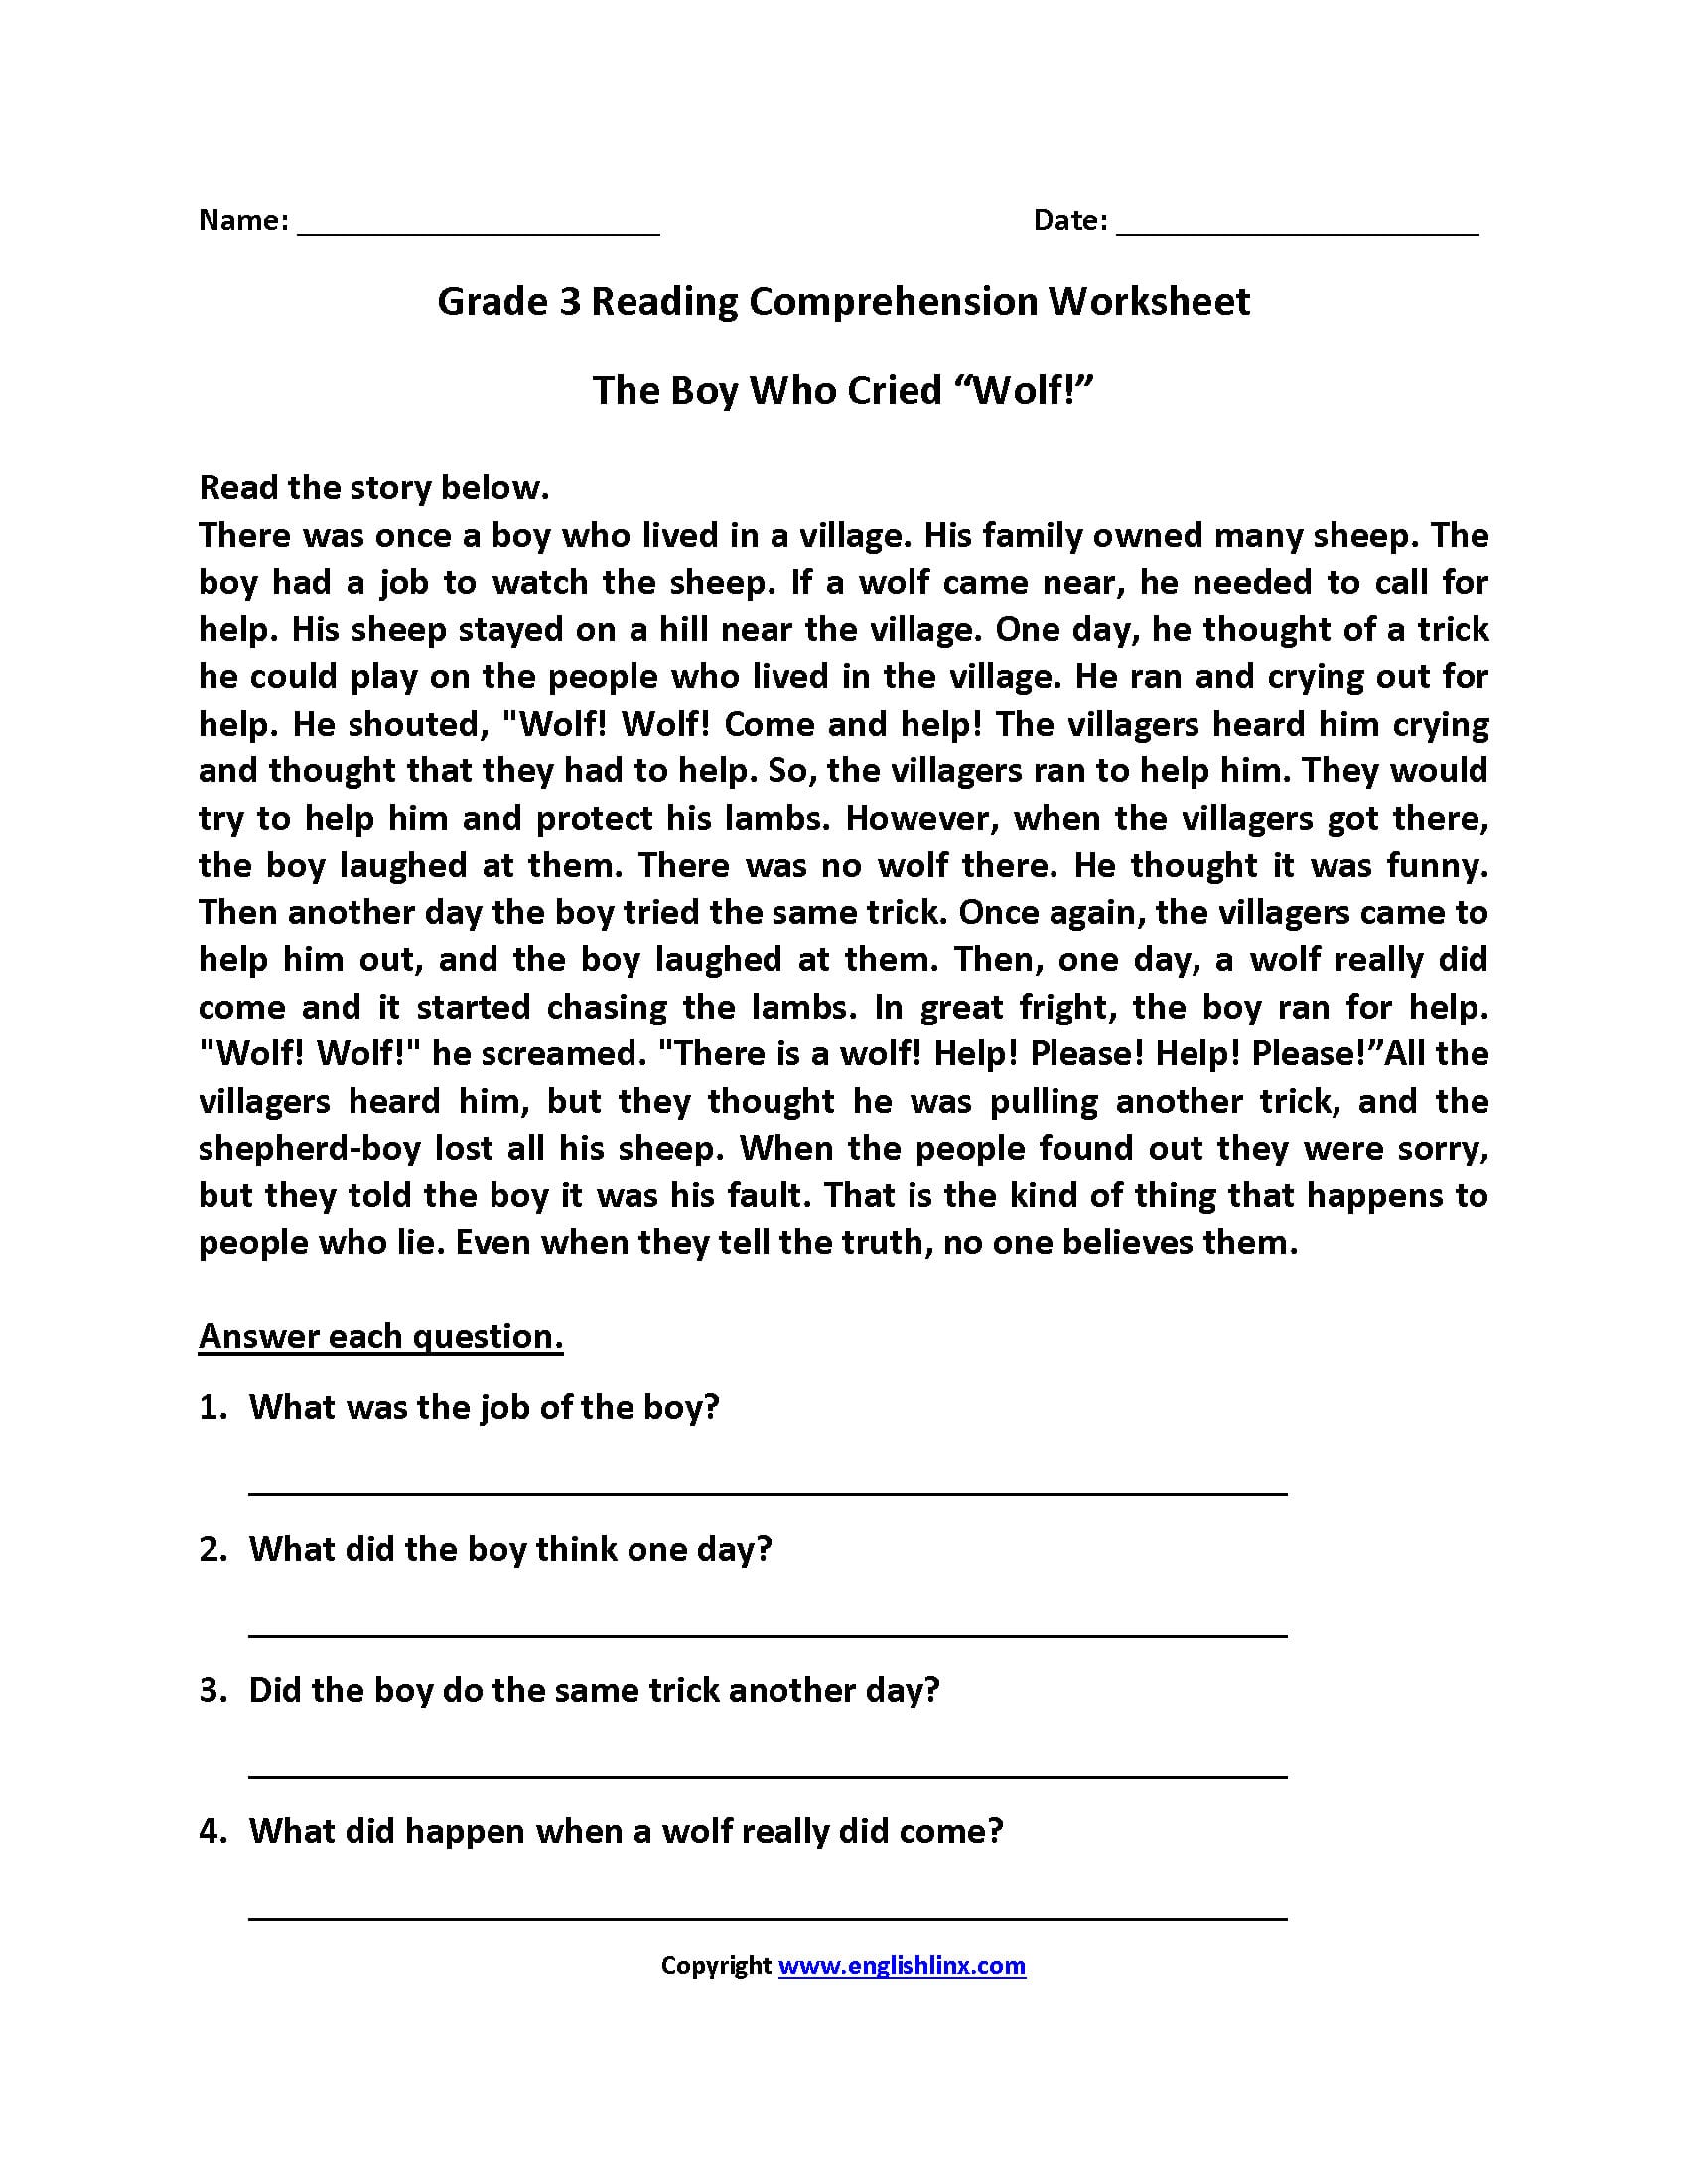 reading-comprehension-worksheets-for-grade-3-pdf-db-excel